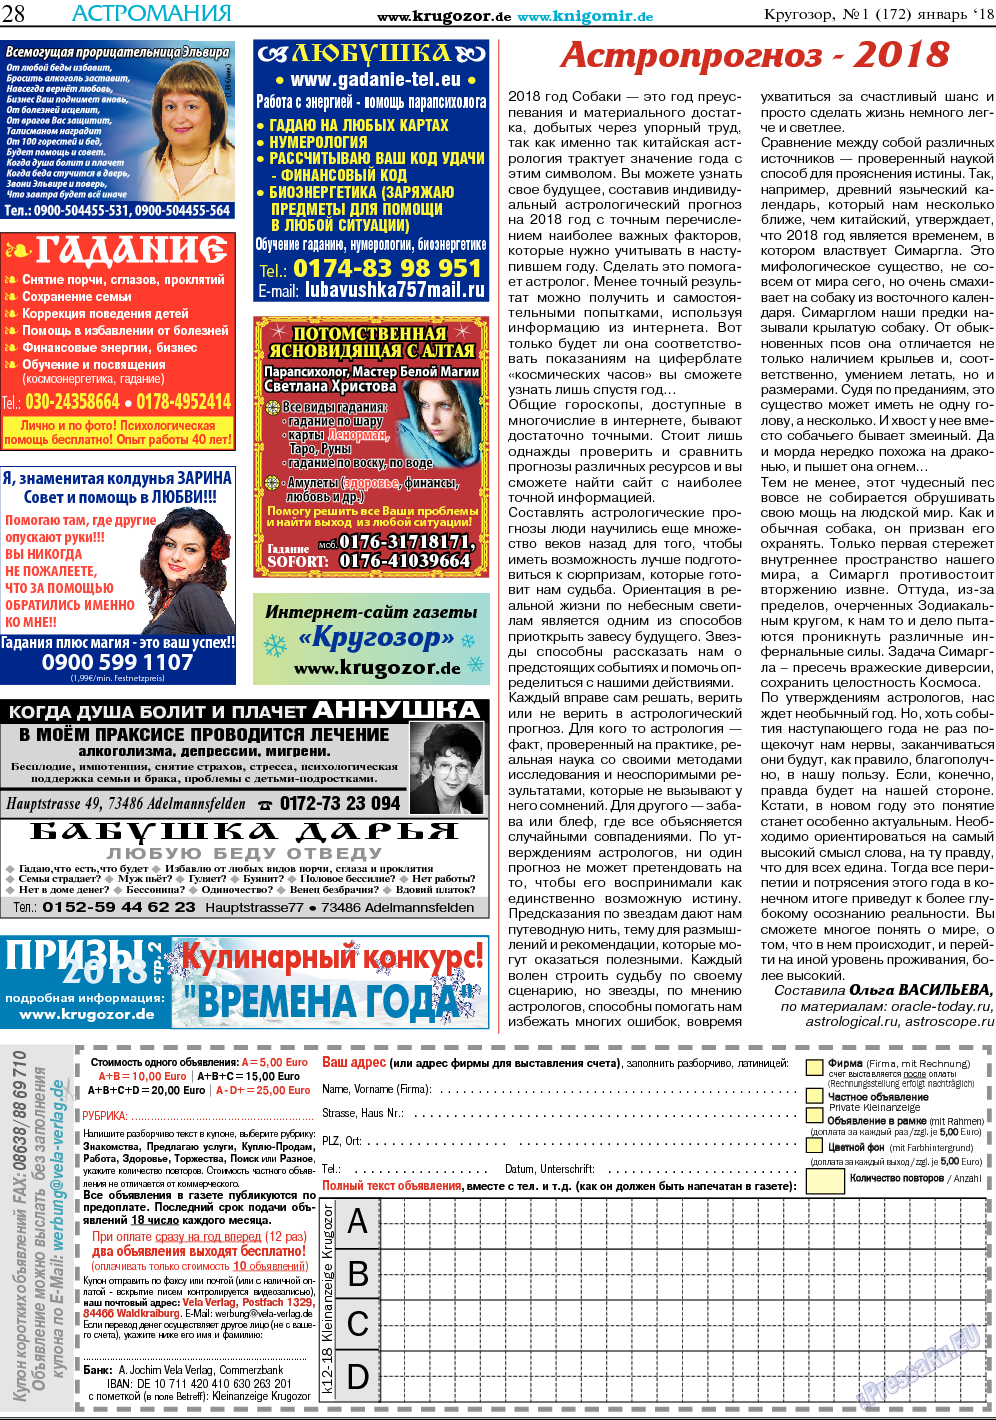 Кругозор, газета. 2018 №1 стр.28